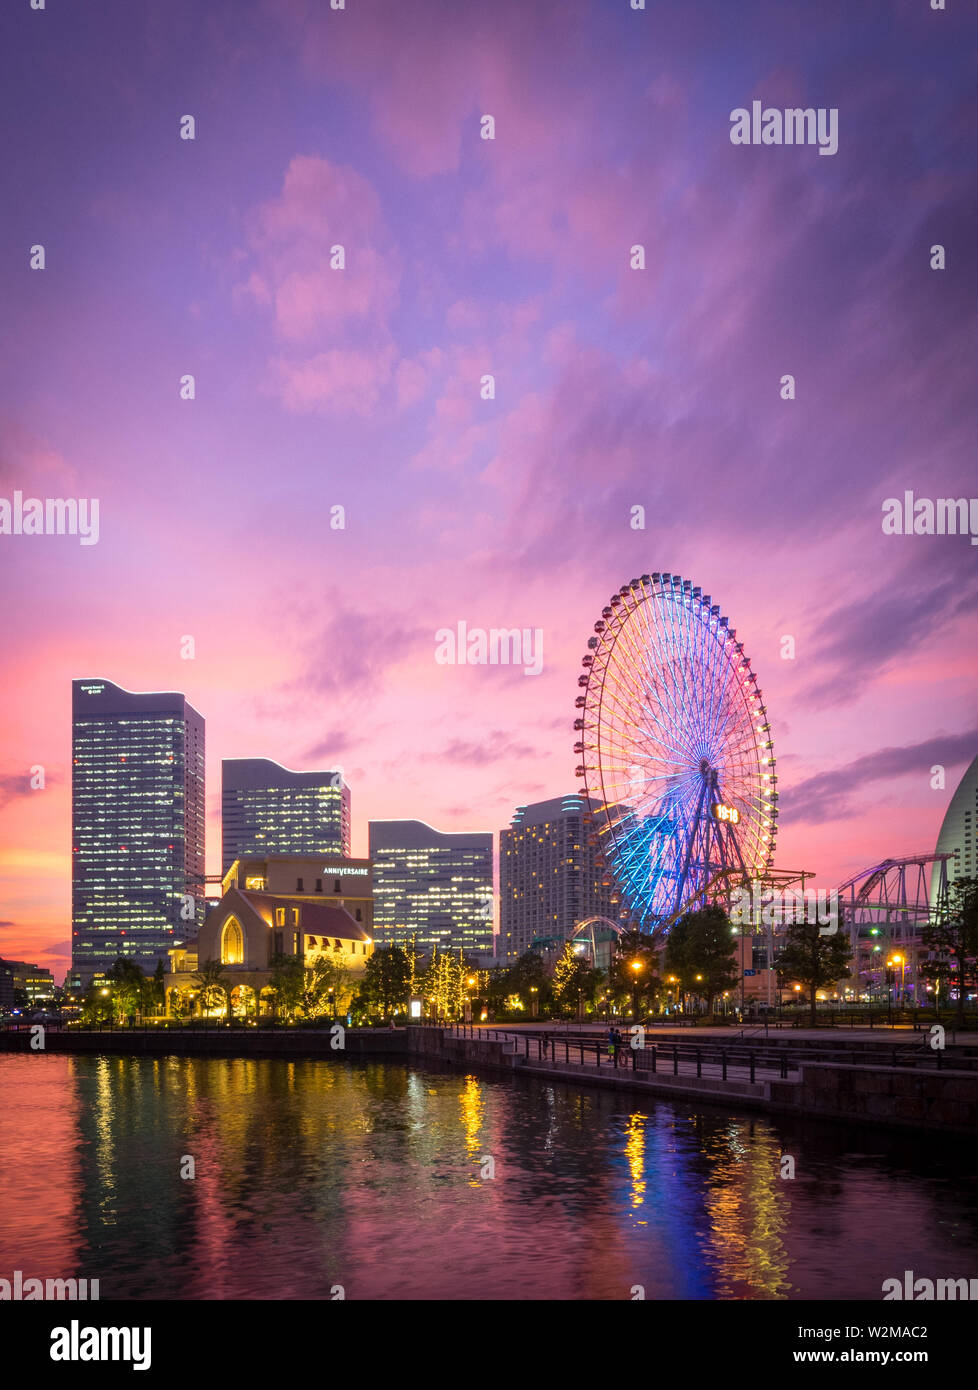 Vue d'un superbe coucher de soleil sur la skyline de Yokohama à Minato-Mirai et le Cosmo Clock 21 grande roue, vu depuis le parc de l'AGNU. Yokohama, Japon. Banque D'Images